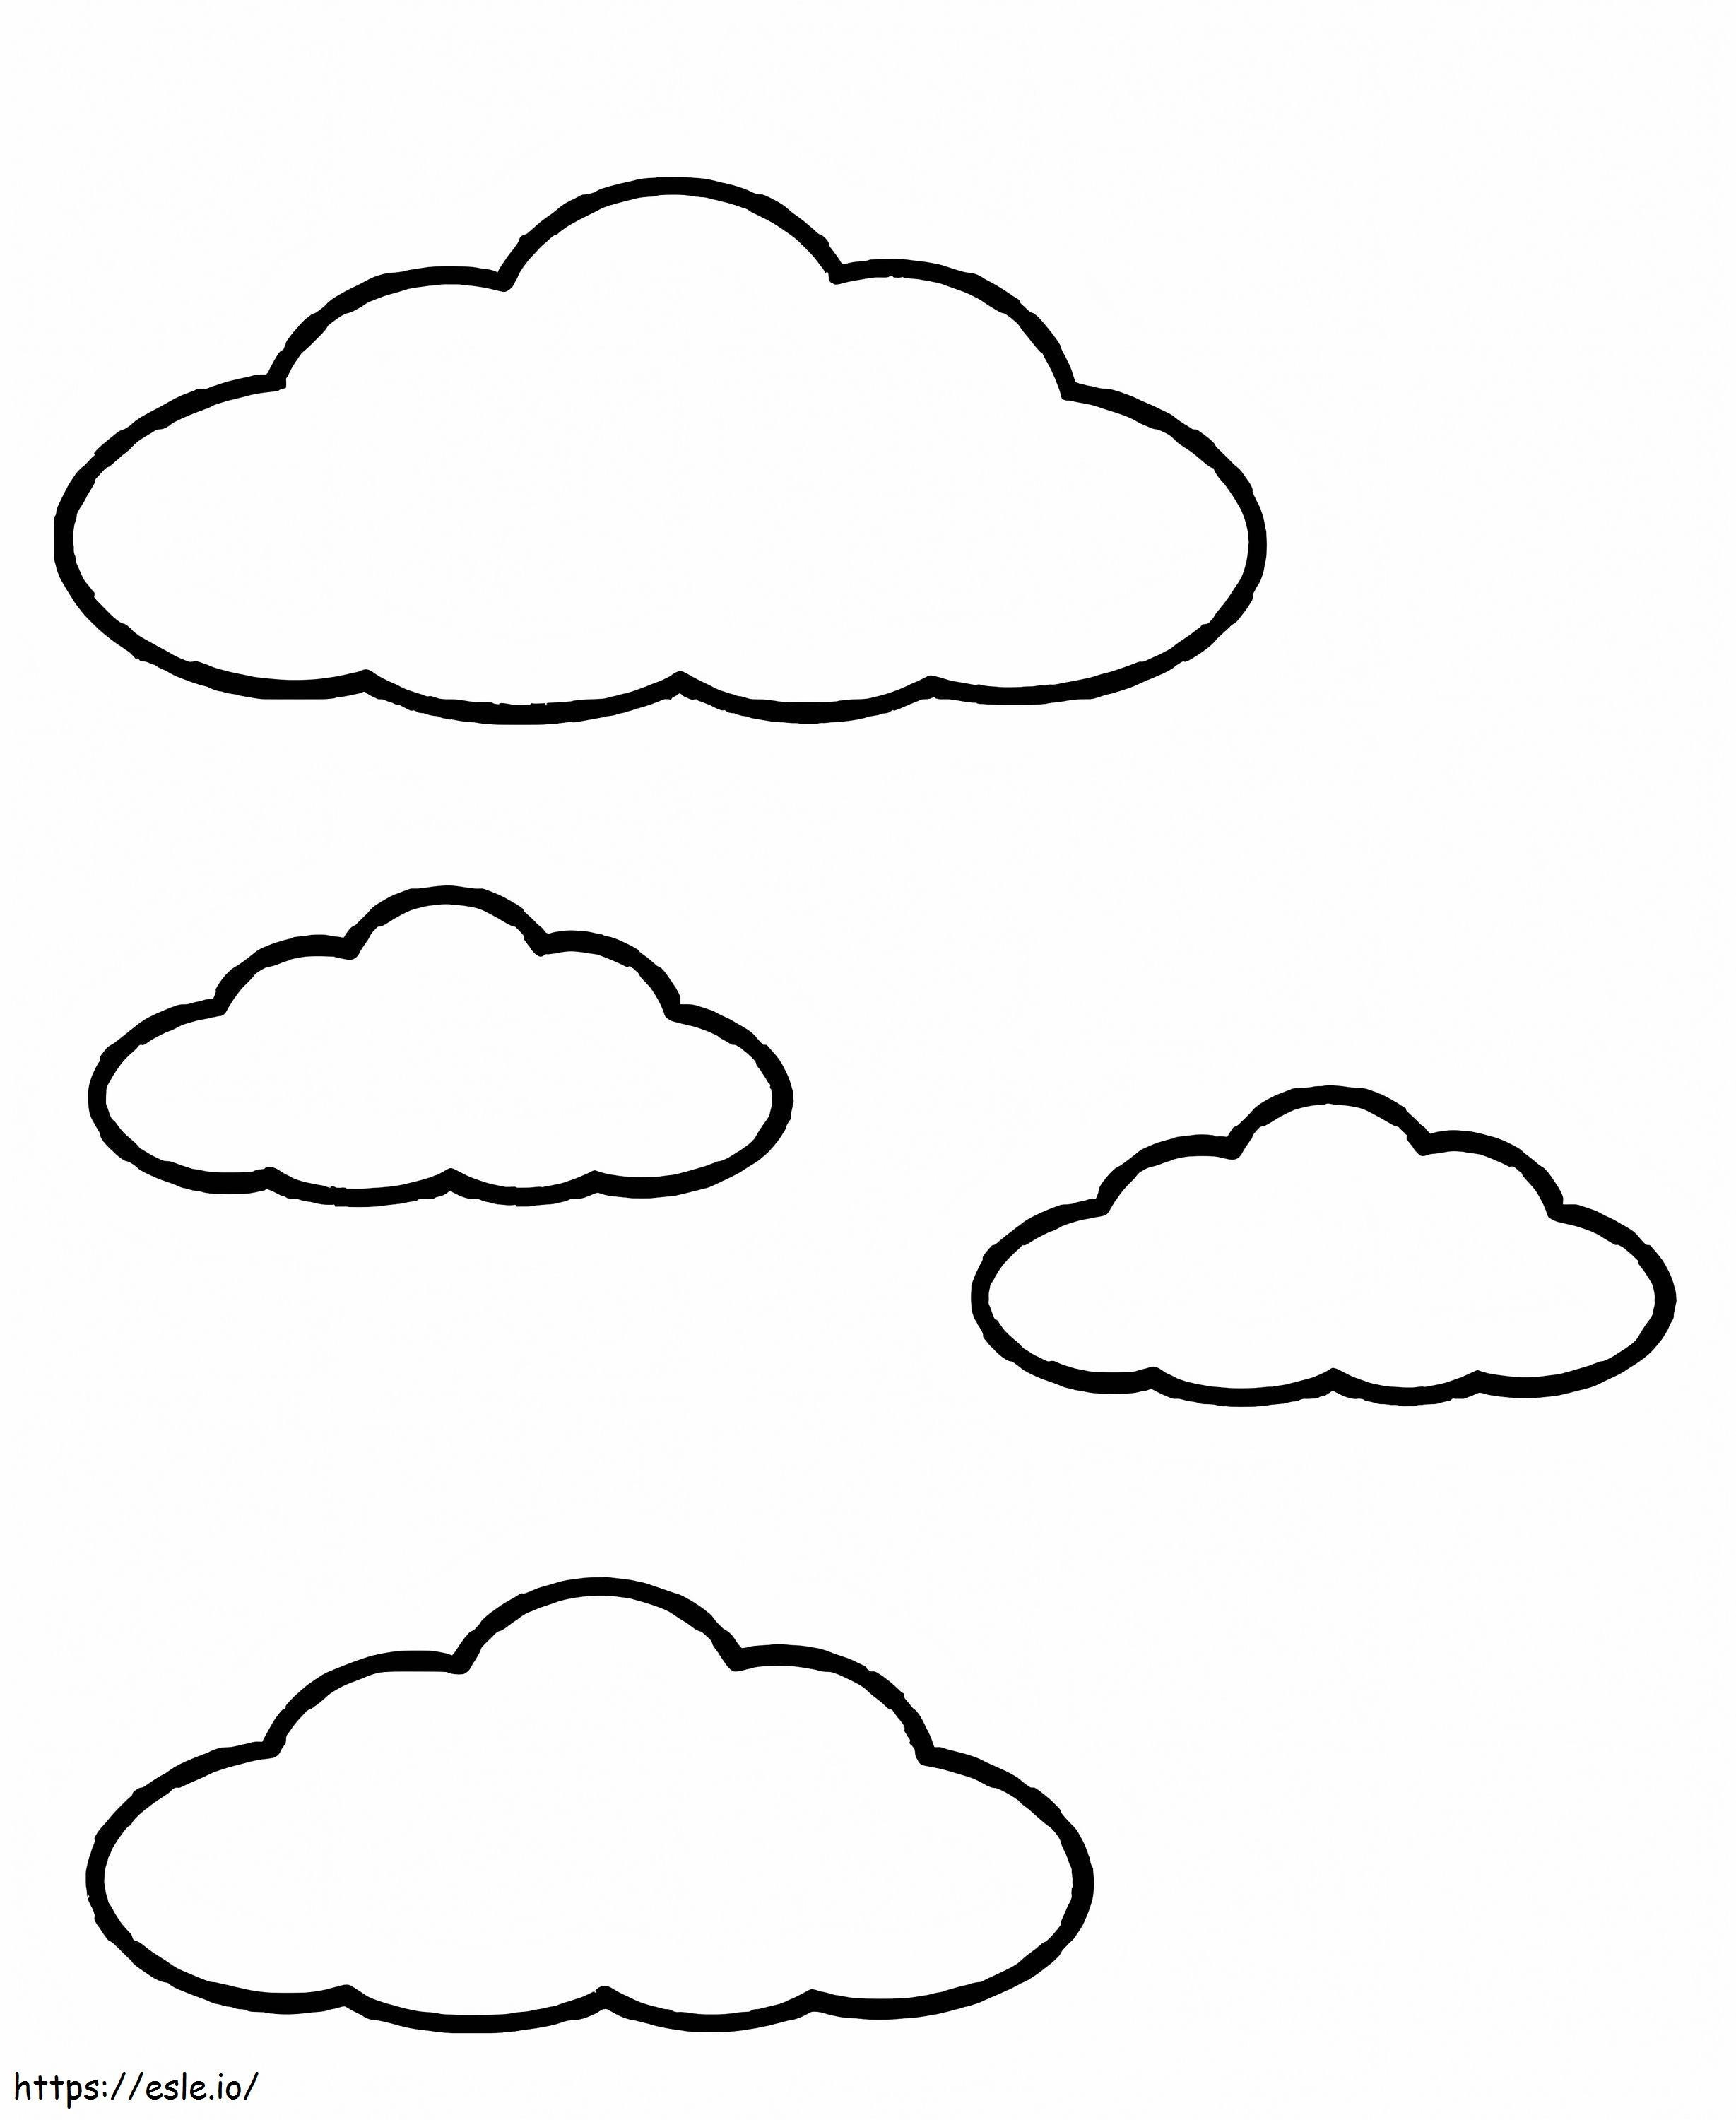 Vier Wolken ausmalbilder